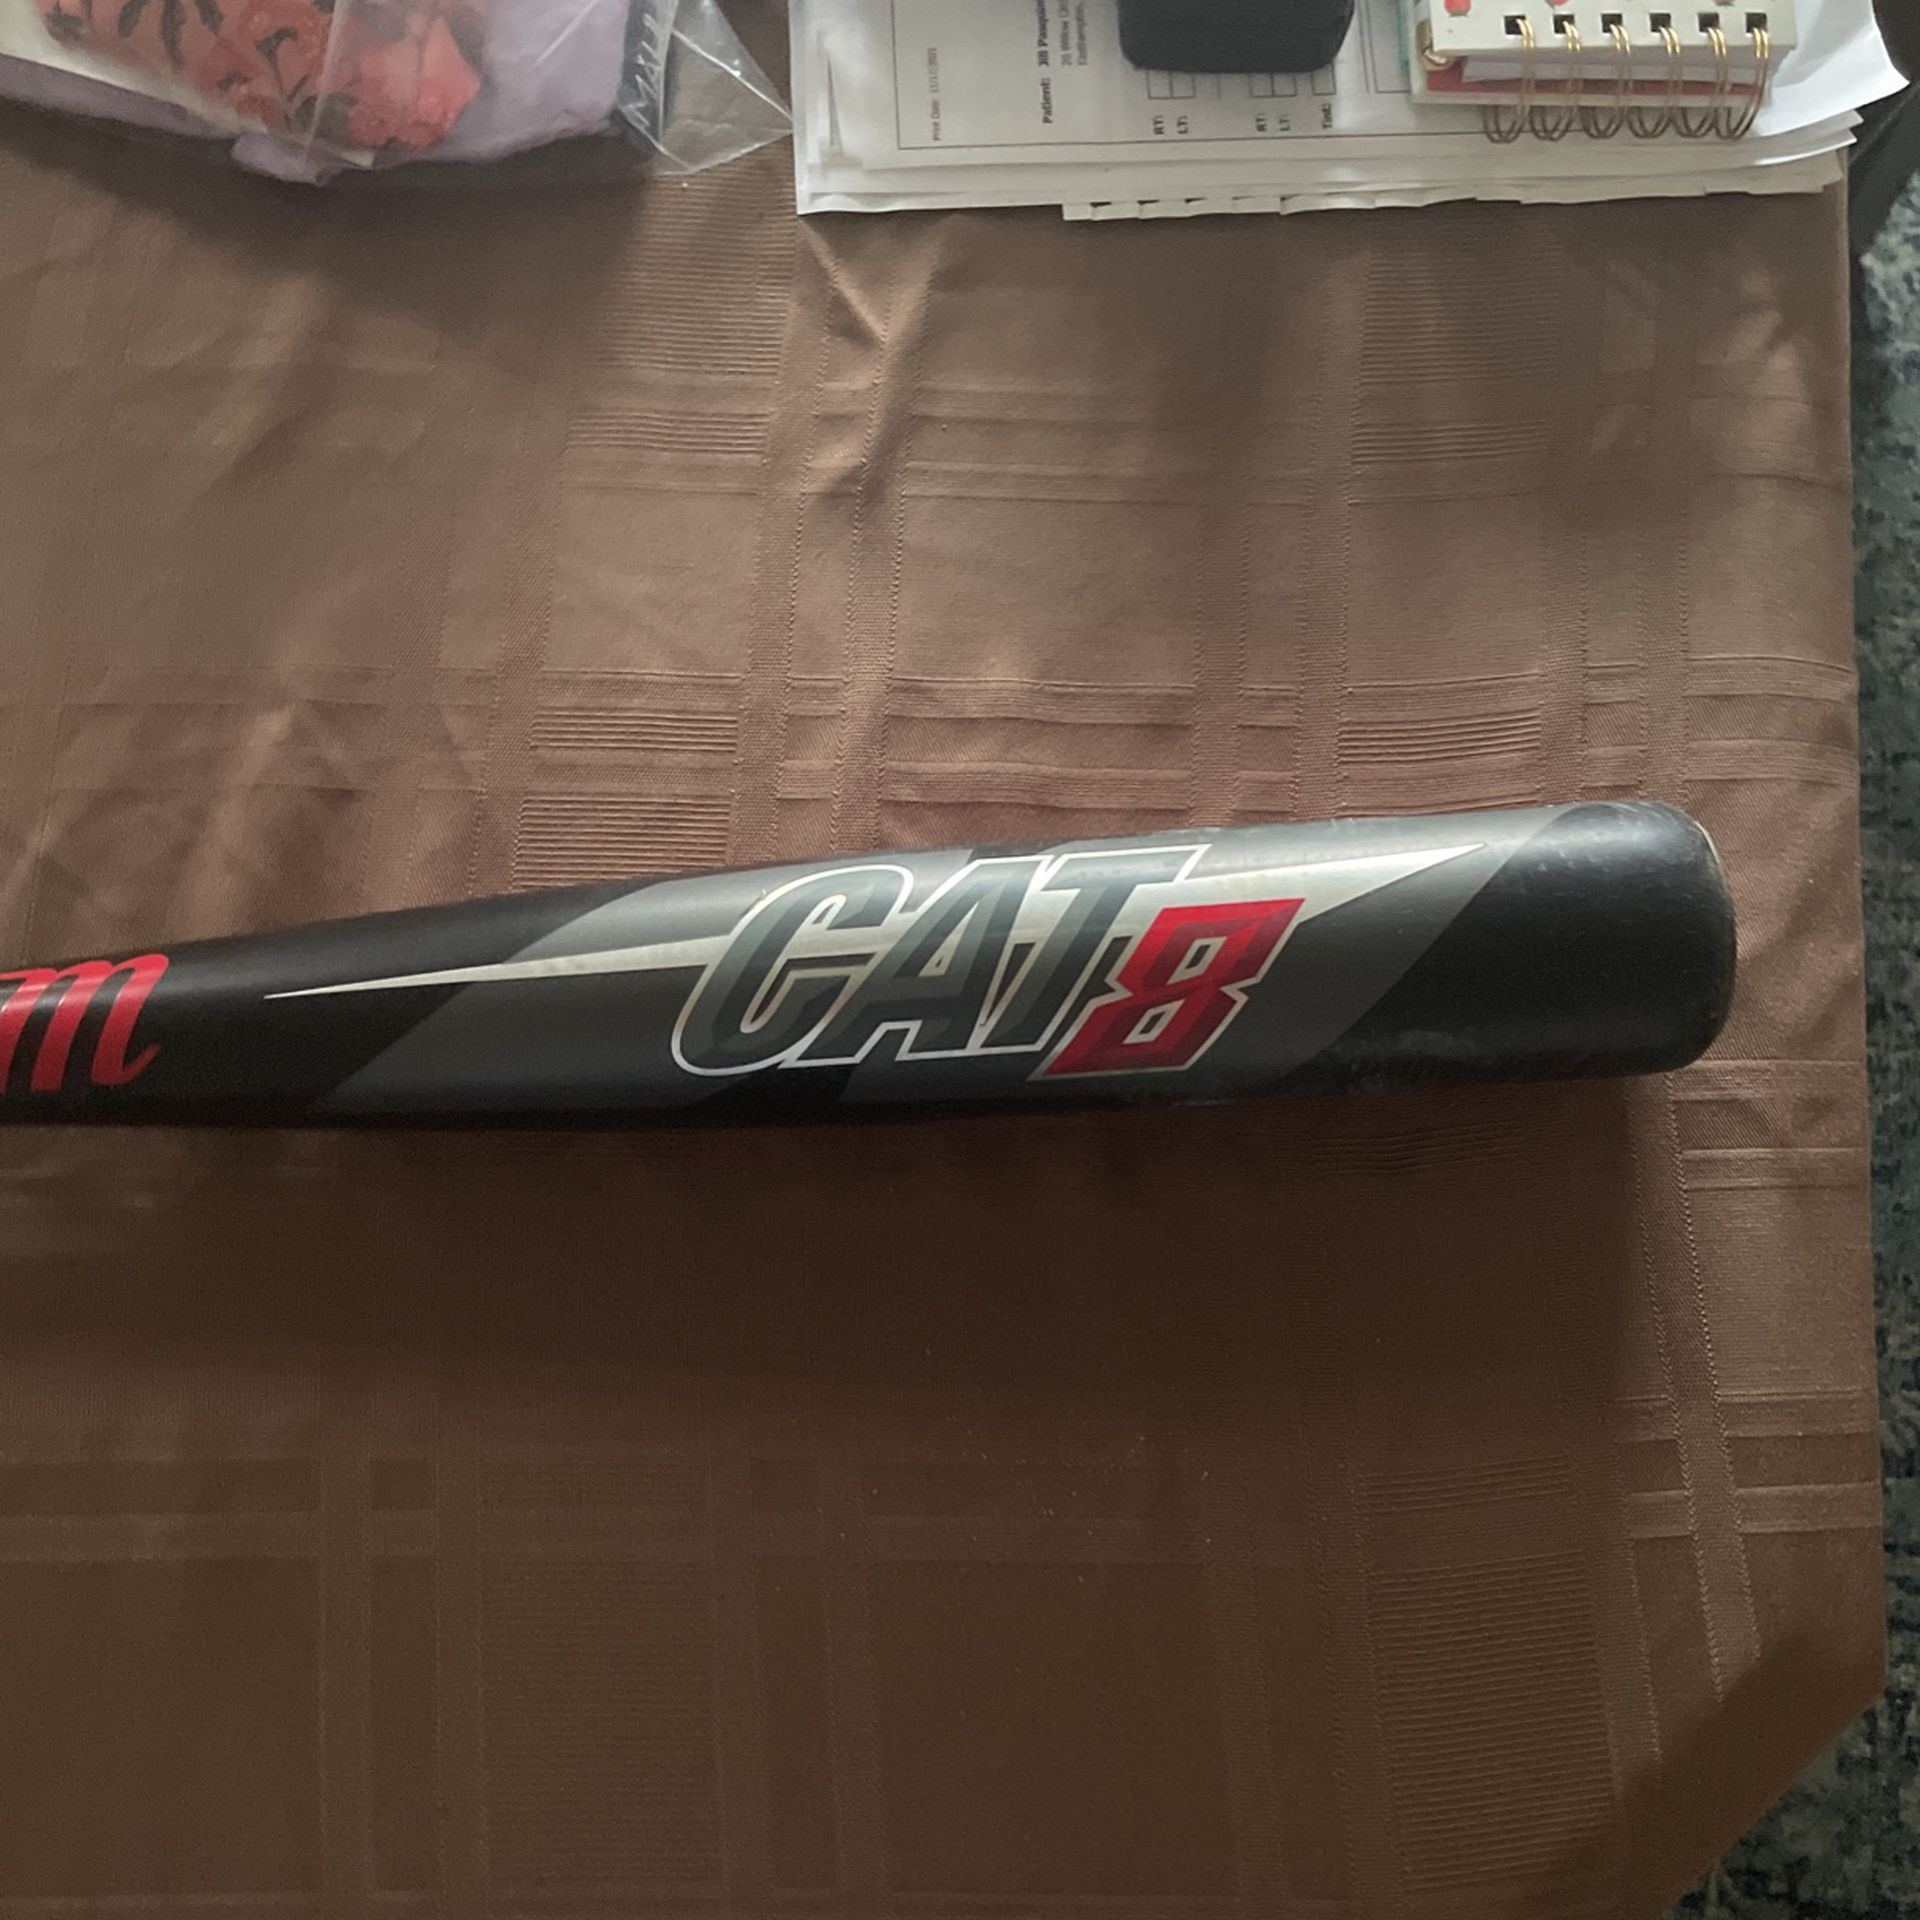 cat8 baseball bat